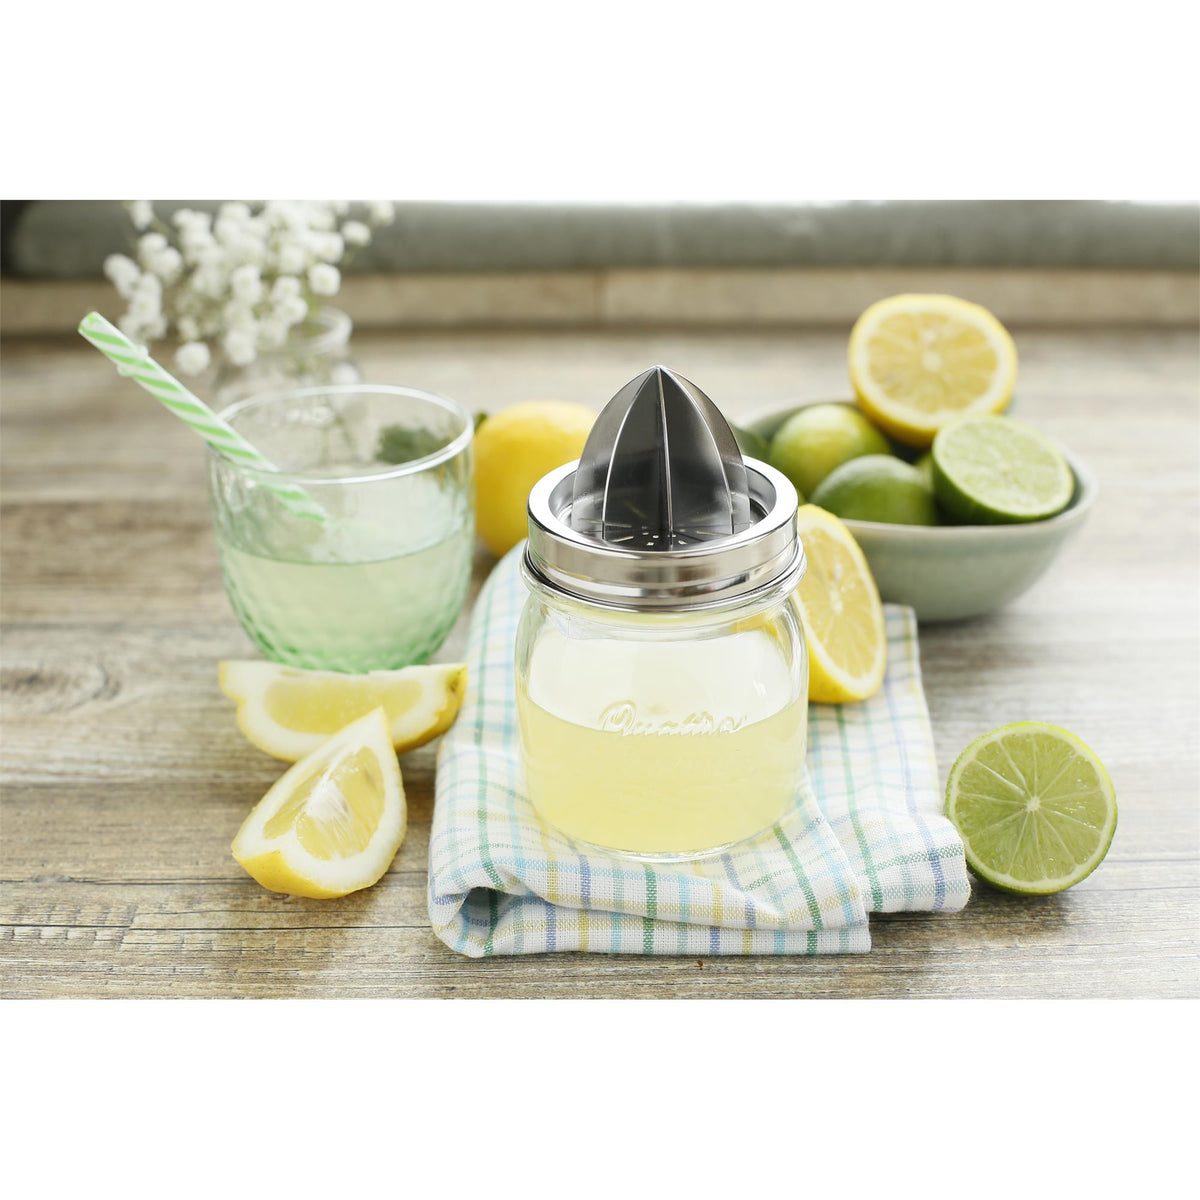 Spremiagrumi acrilico Clip di limone tenuta in mano spremiagrumi manuale  Bar Gadget a forma di uccello spremiagrumi arancia Lime attrezzo da cucina  - AliExpress